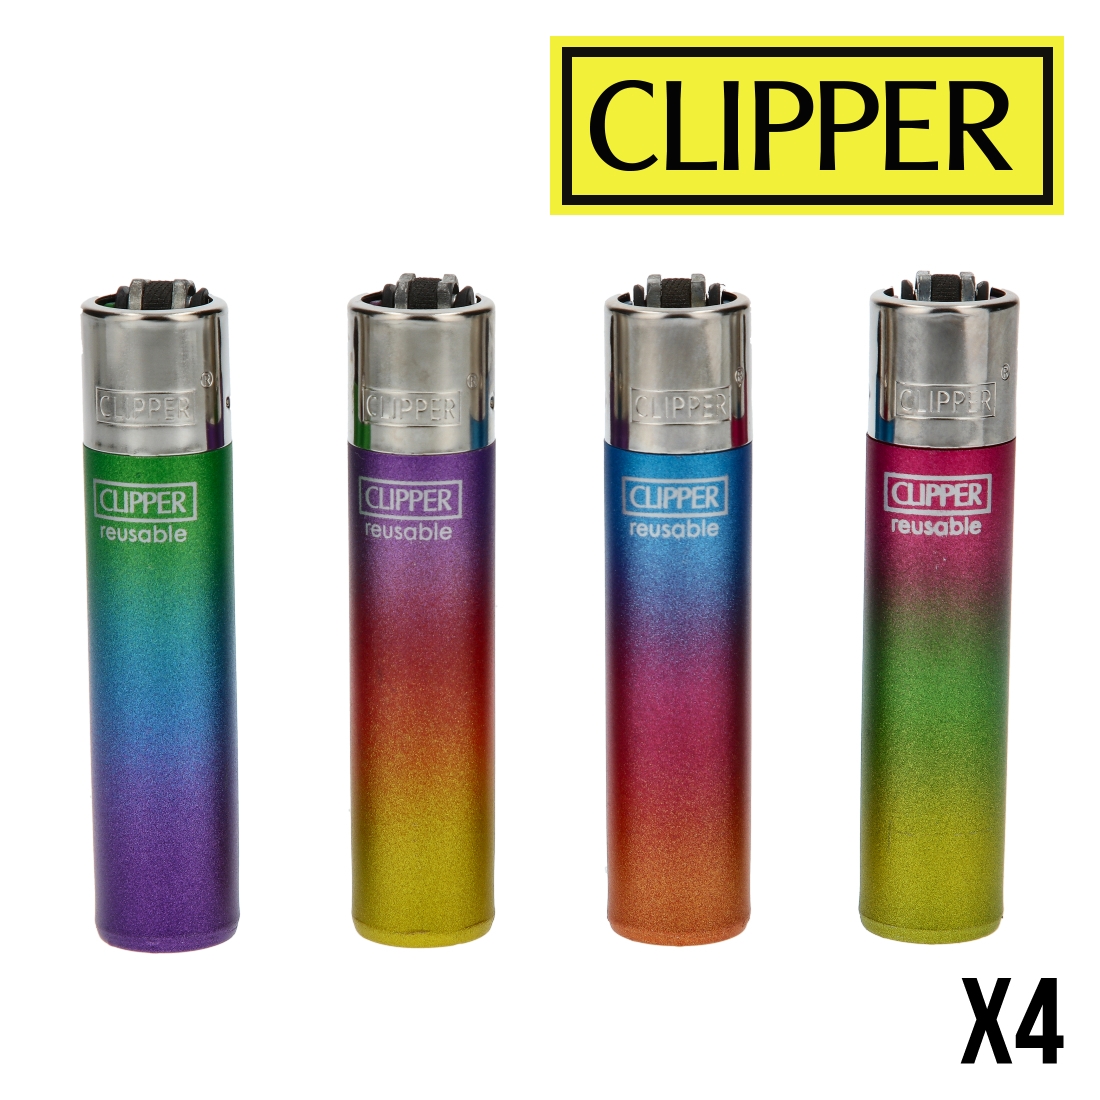 CLIPPER METALLIC TRIPLE GRADIENT X4